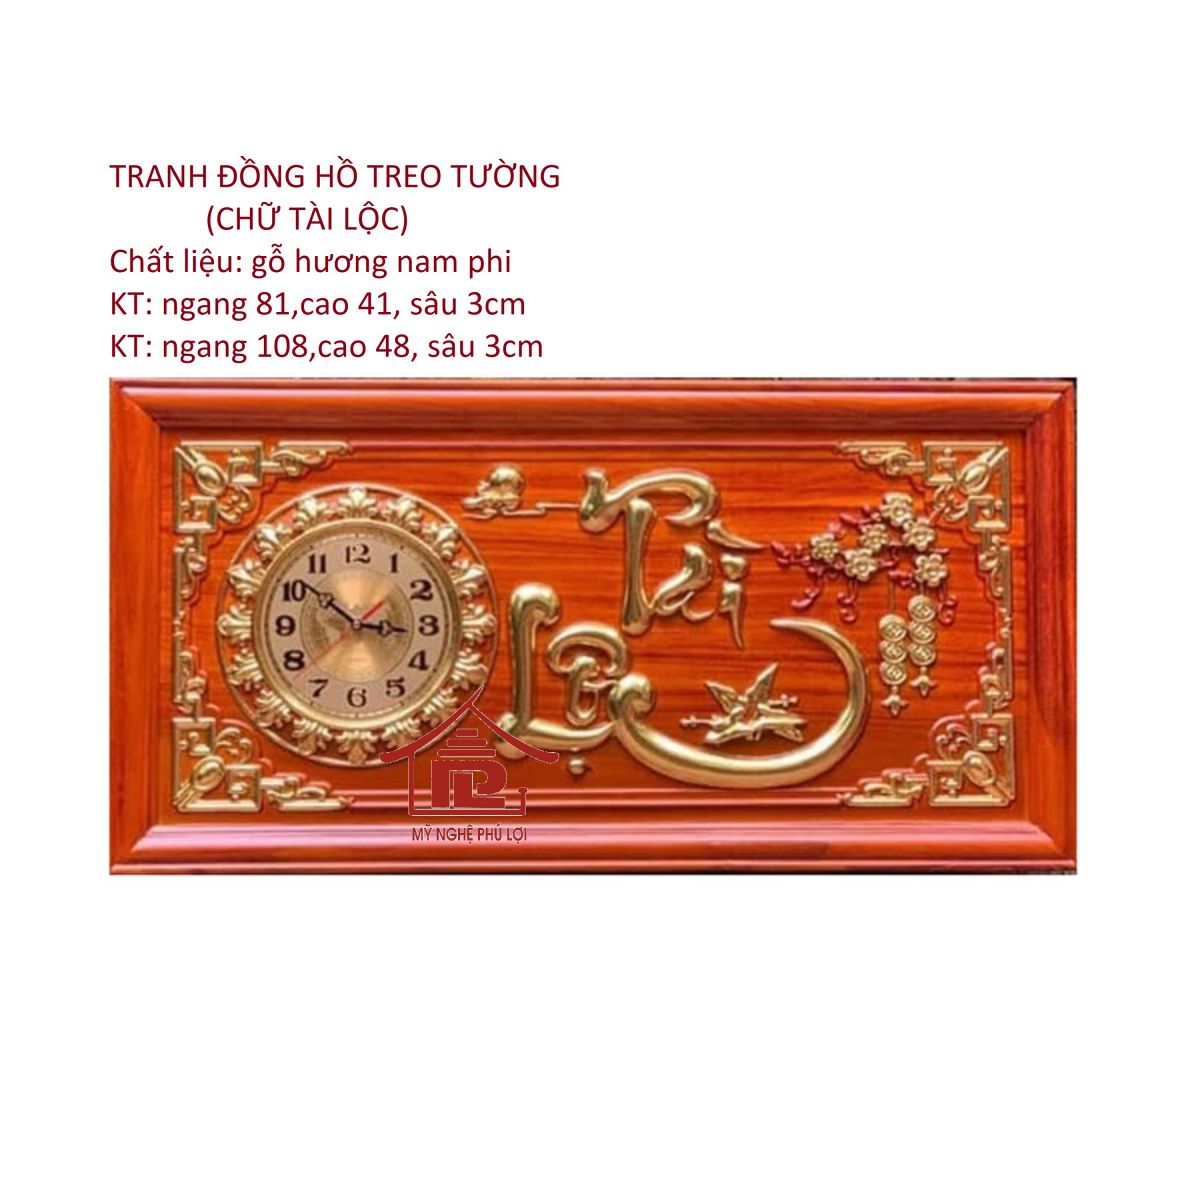 Tranh đồng hồ chữ Tài - Lộc gỗ hương - Đồng hồ treo tường Thương hiệu OEM |  NoiThatRuby.com